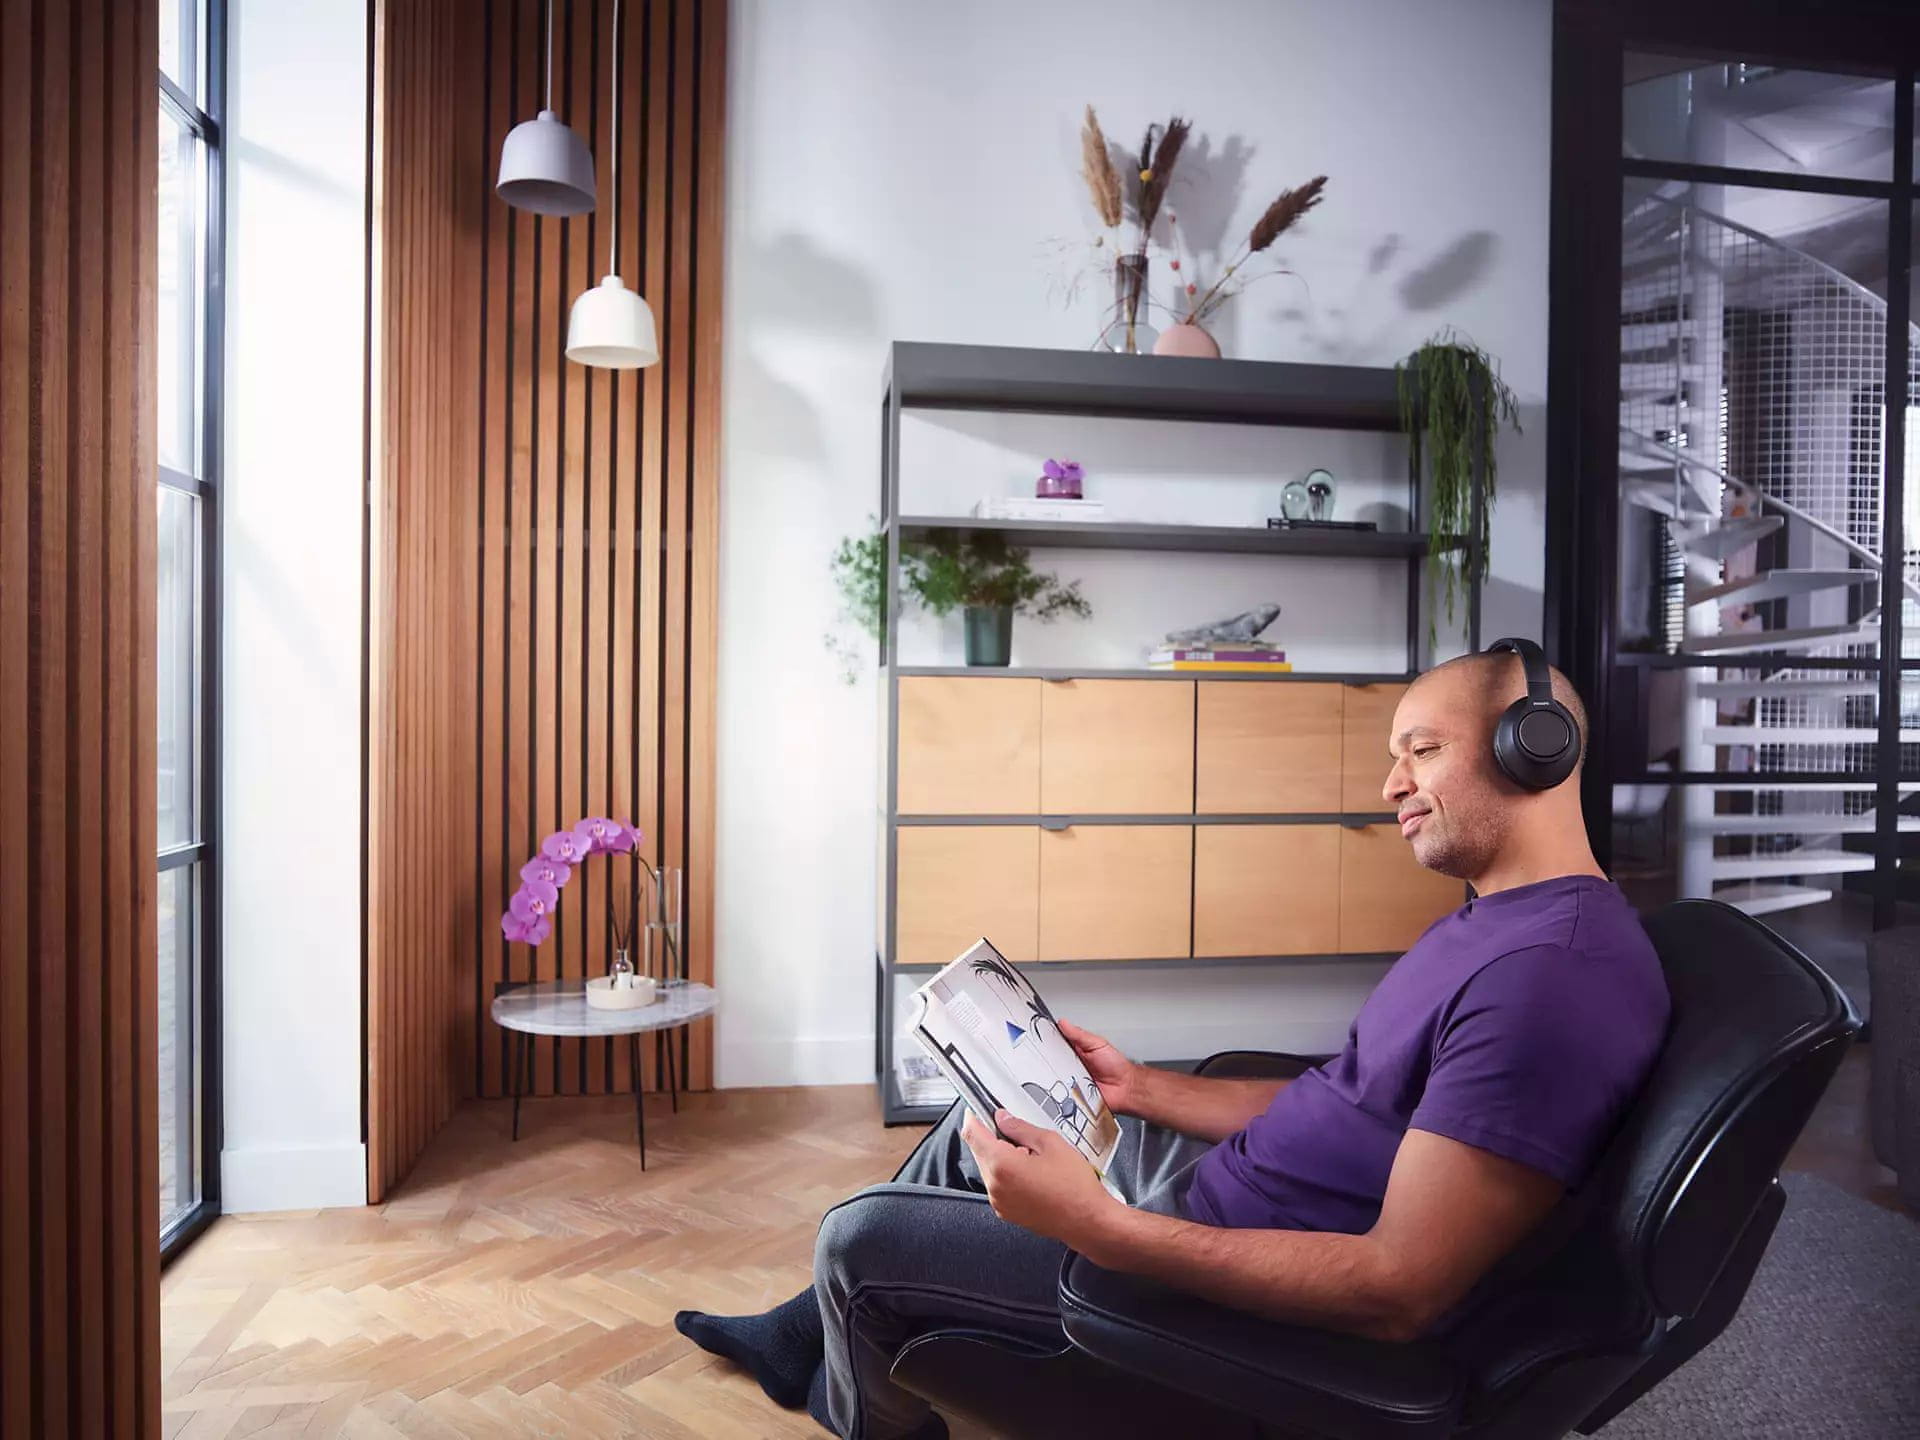  TV sluchátka Bluetooth philips tah6206 pohodlná rychlonabíjení dlouhá výdrž mikrofon pro handsfree moderní design 